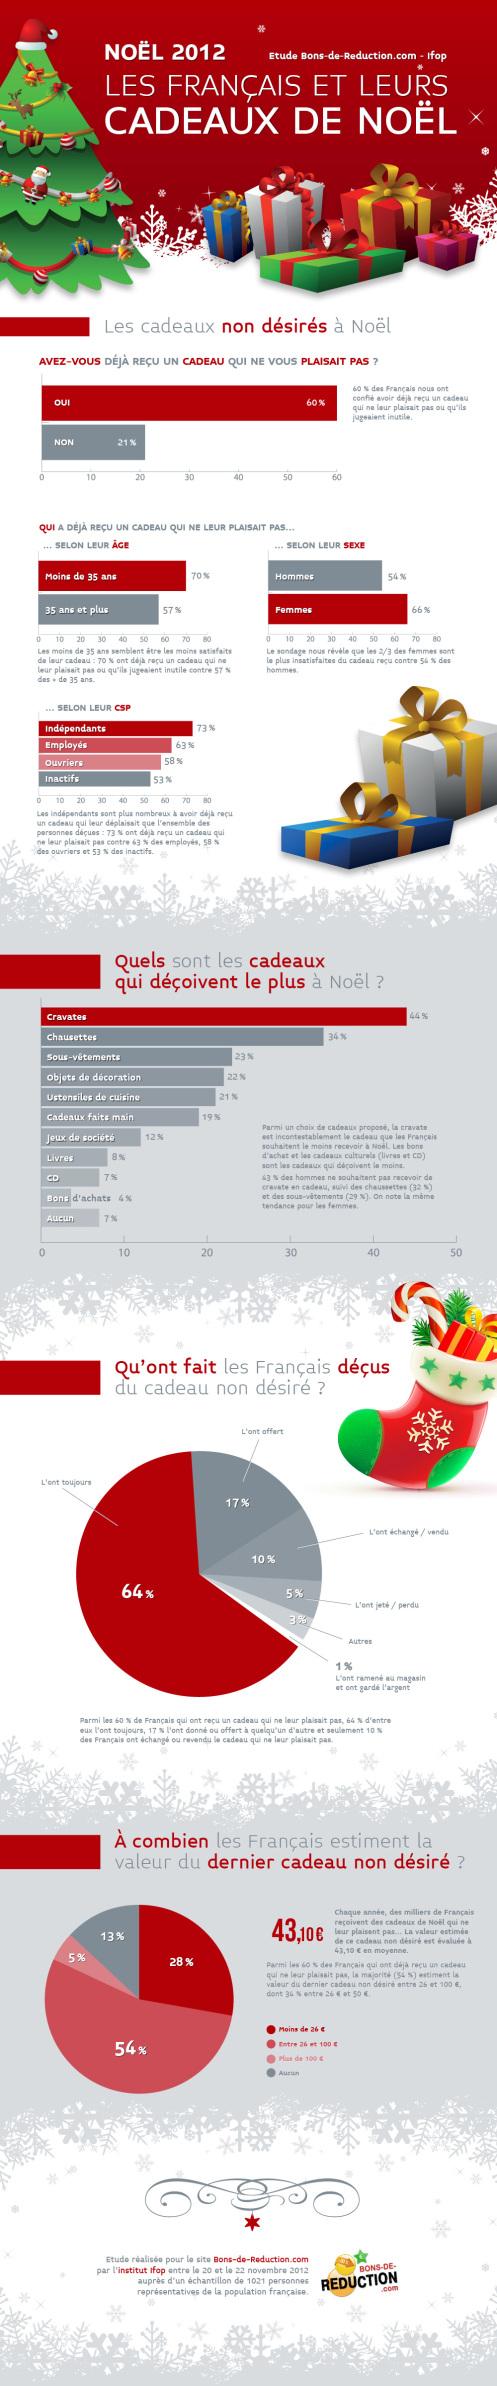 infographie-Cadeaux